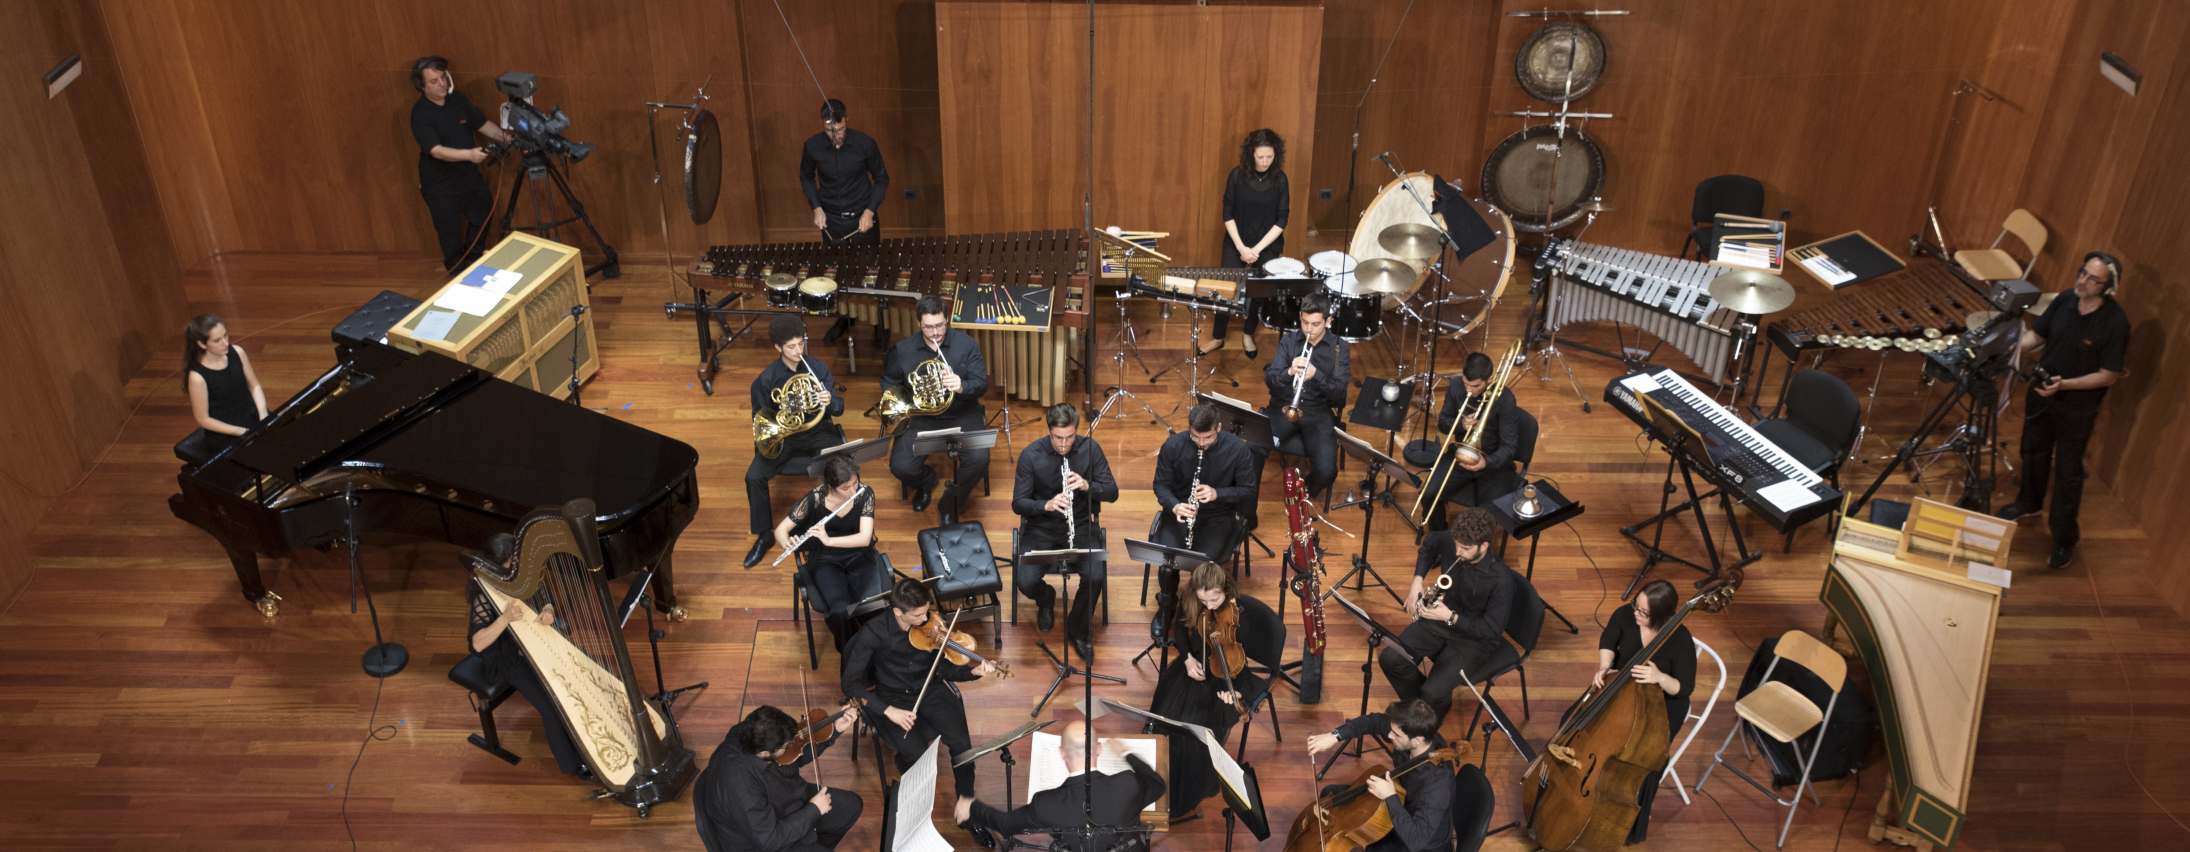 Concierto de la Sinfonietta de la ESMRS en el Museo Reina Sofía (A400) en Madrid